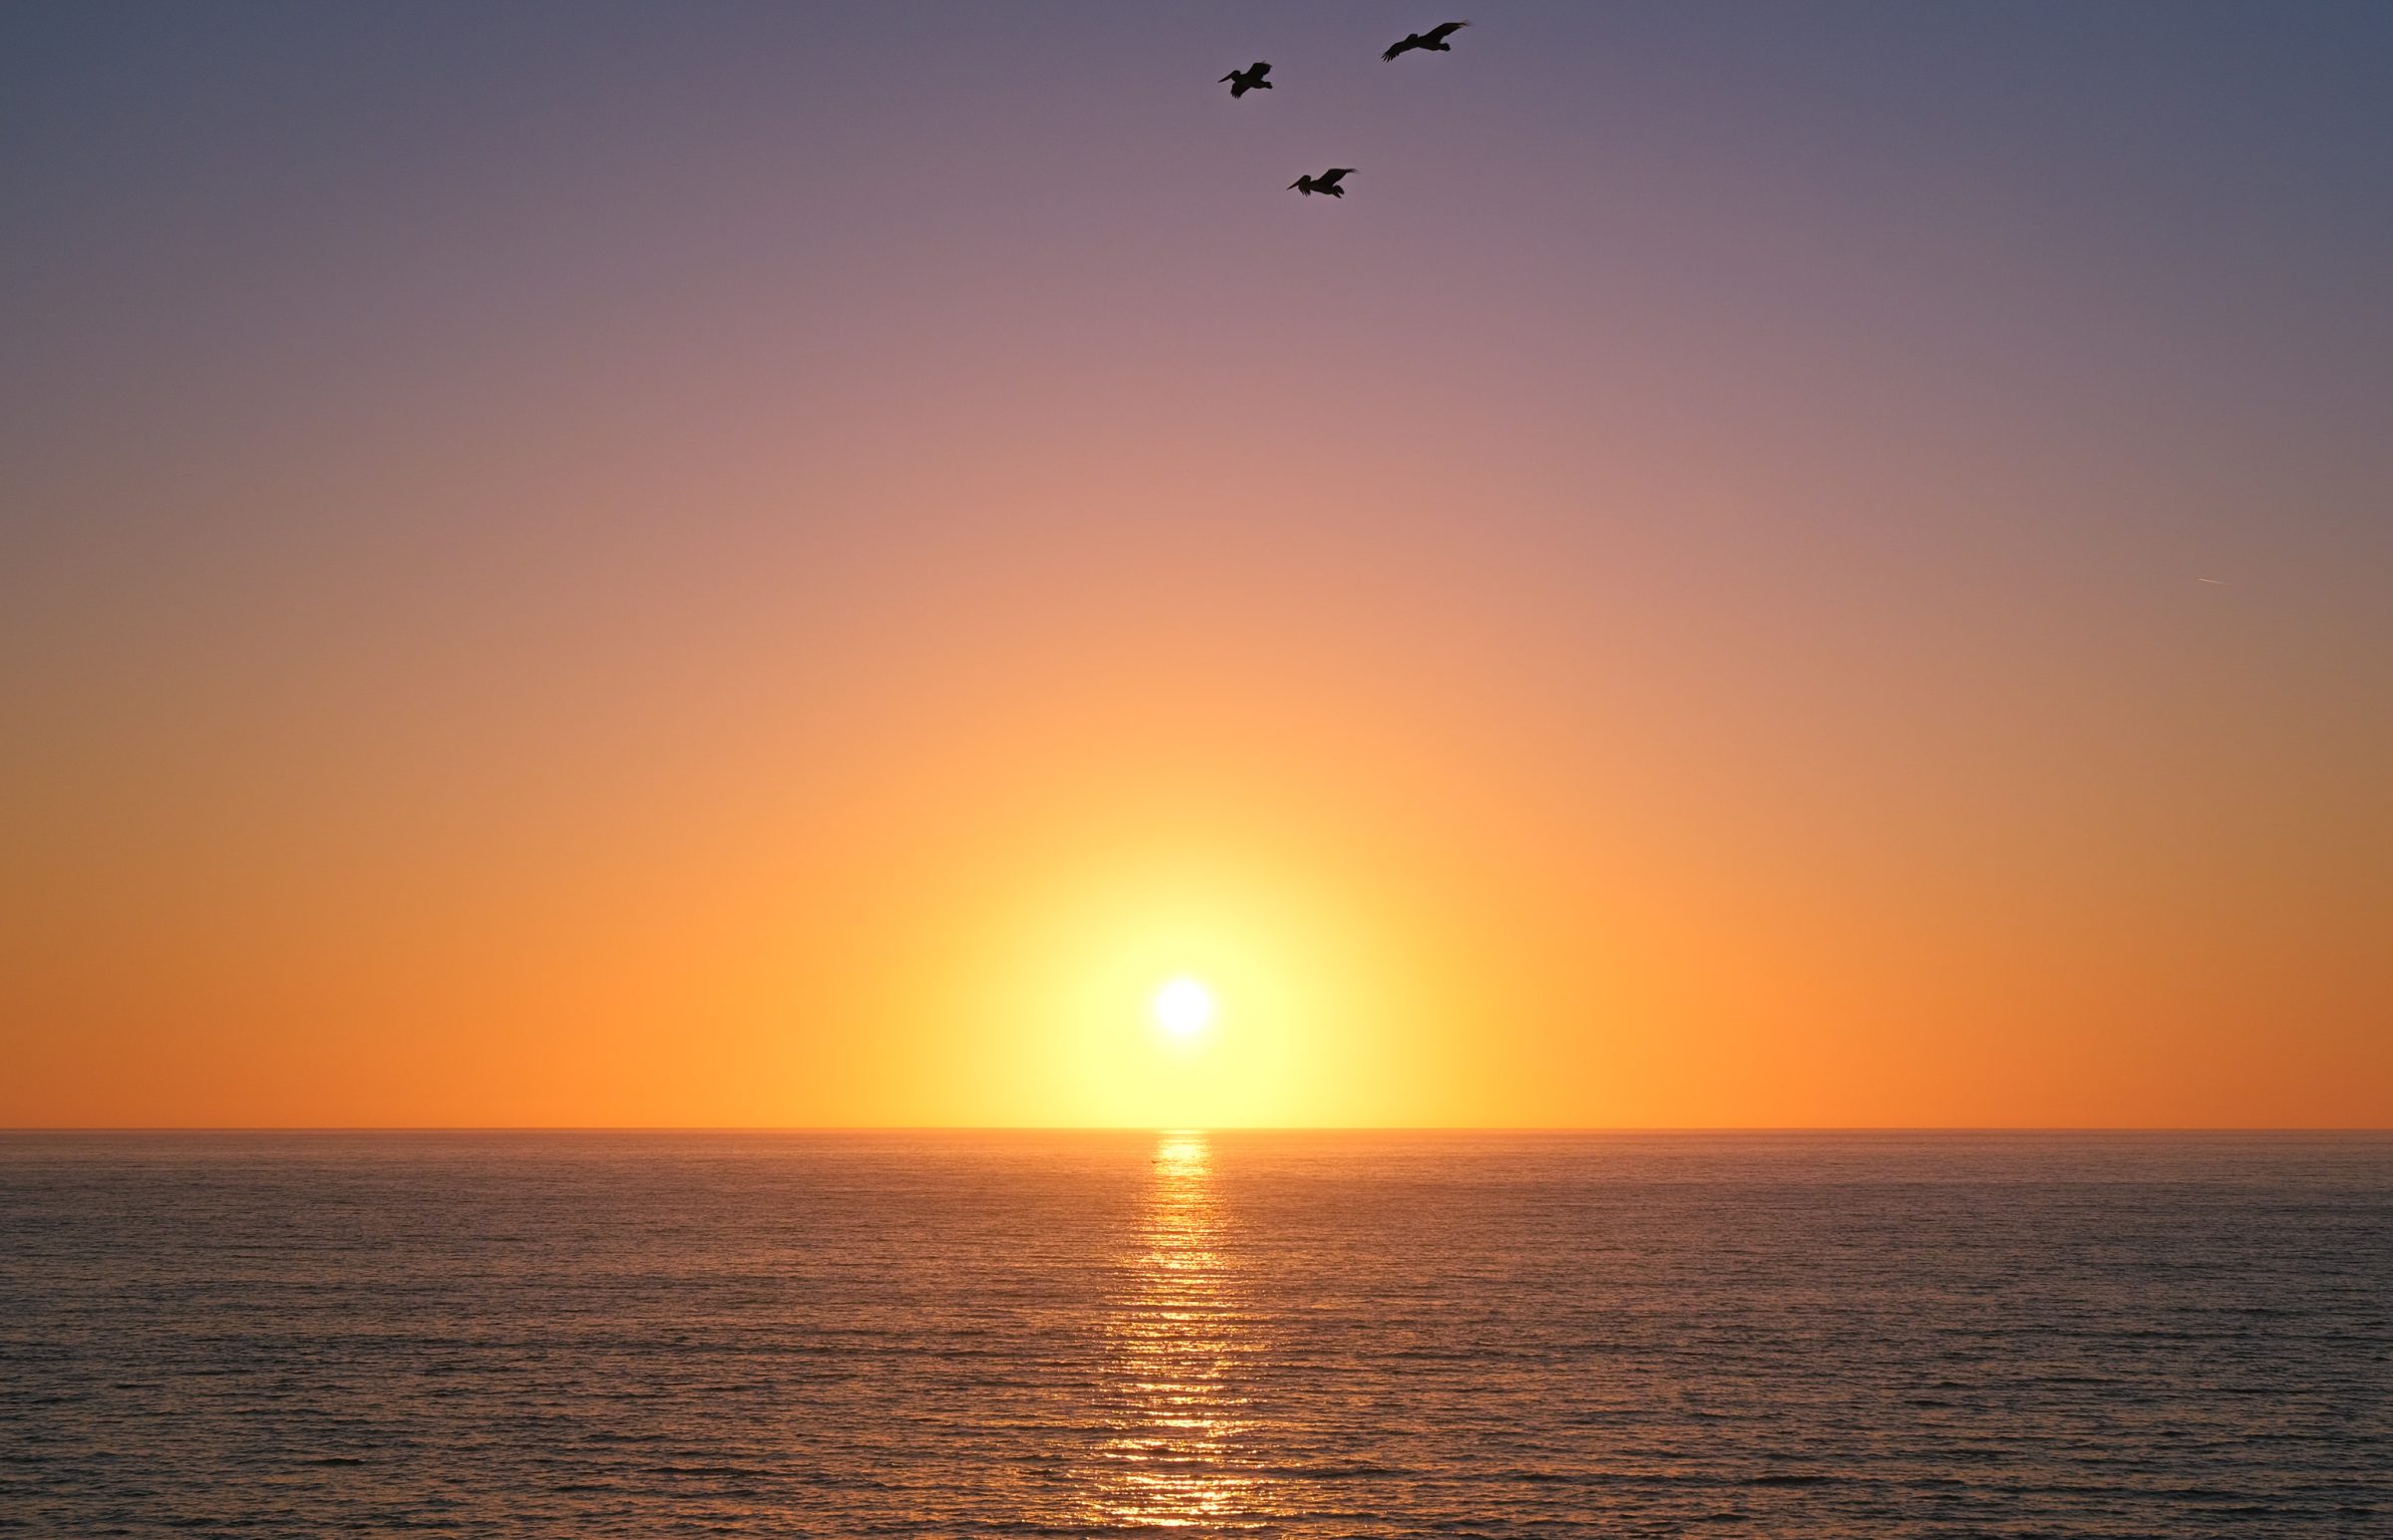 Um mar calmo, o sol poente e pelicanos voando por cima. Tranquilidade suprema.